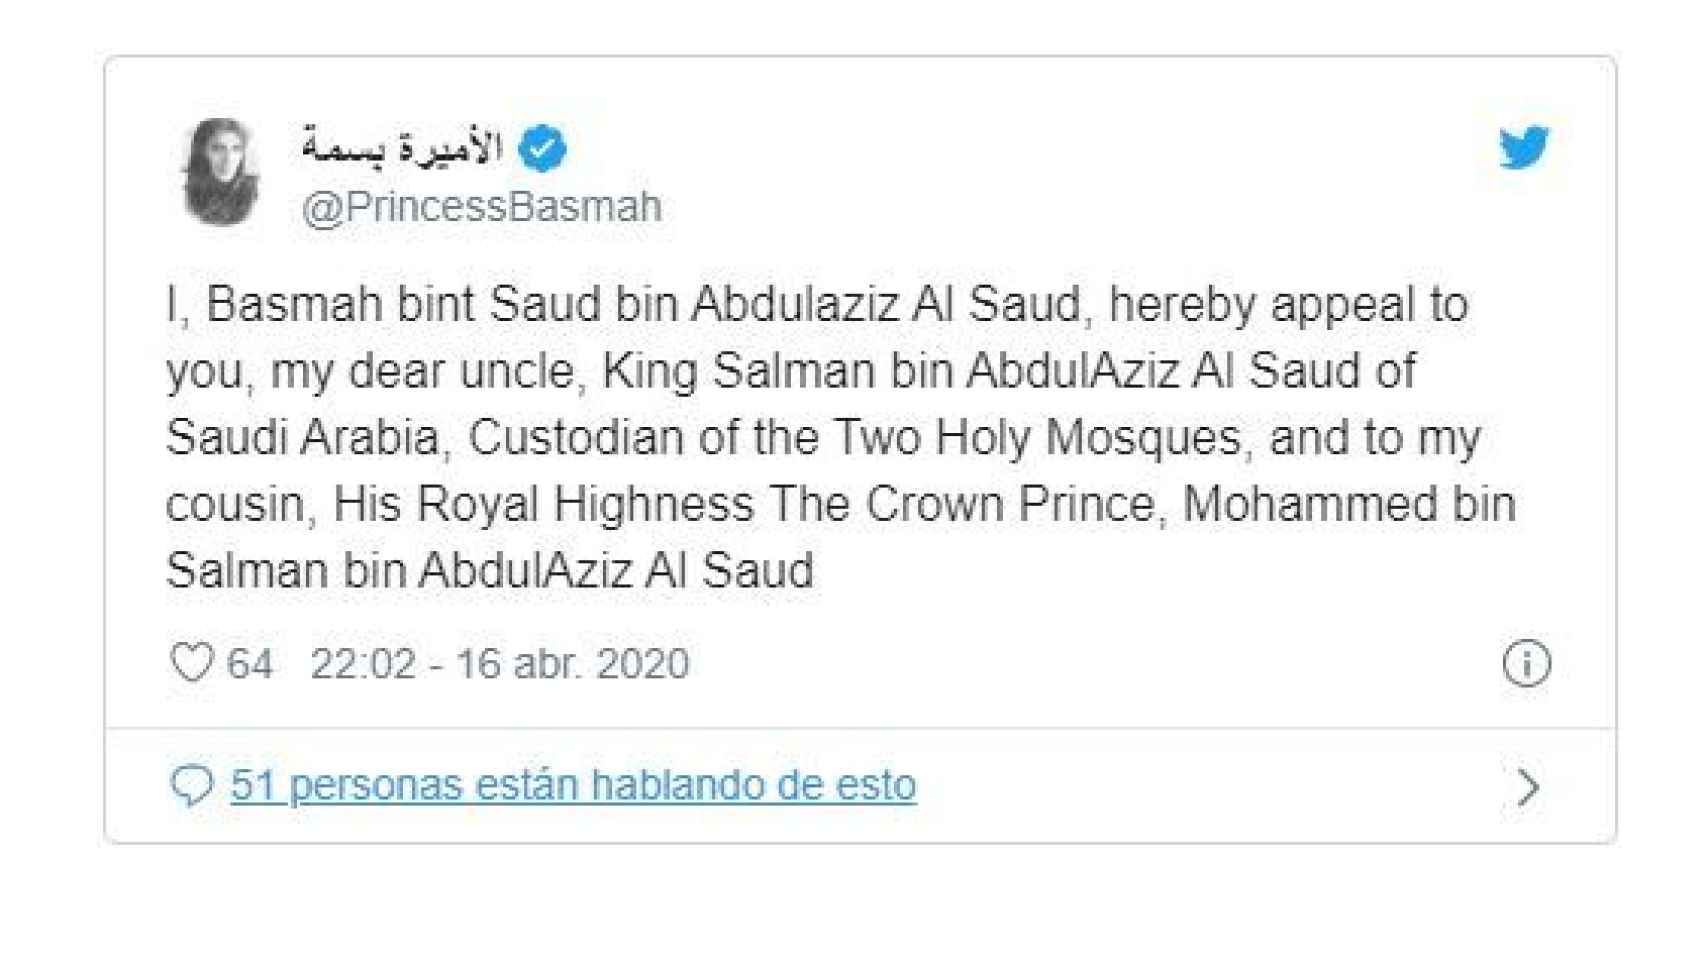 Tuit de la princesa Basma de Arabia Saudí.